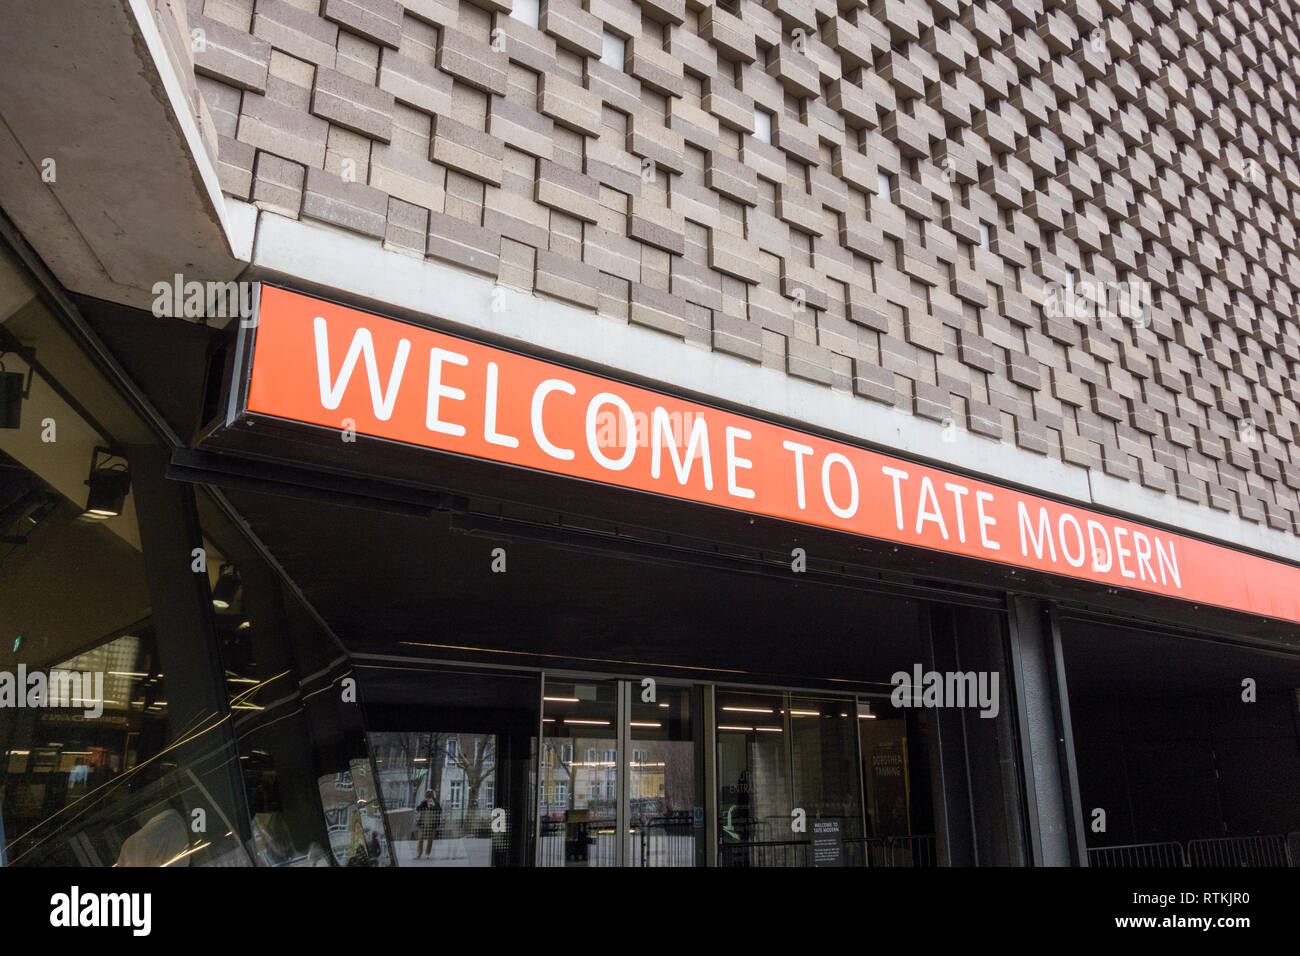 Bienvenue à Tate modern affiche à l'extérieur de la Tate Modern, Londres, UK Banque D'Images